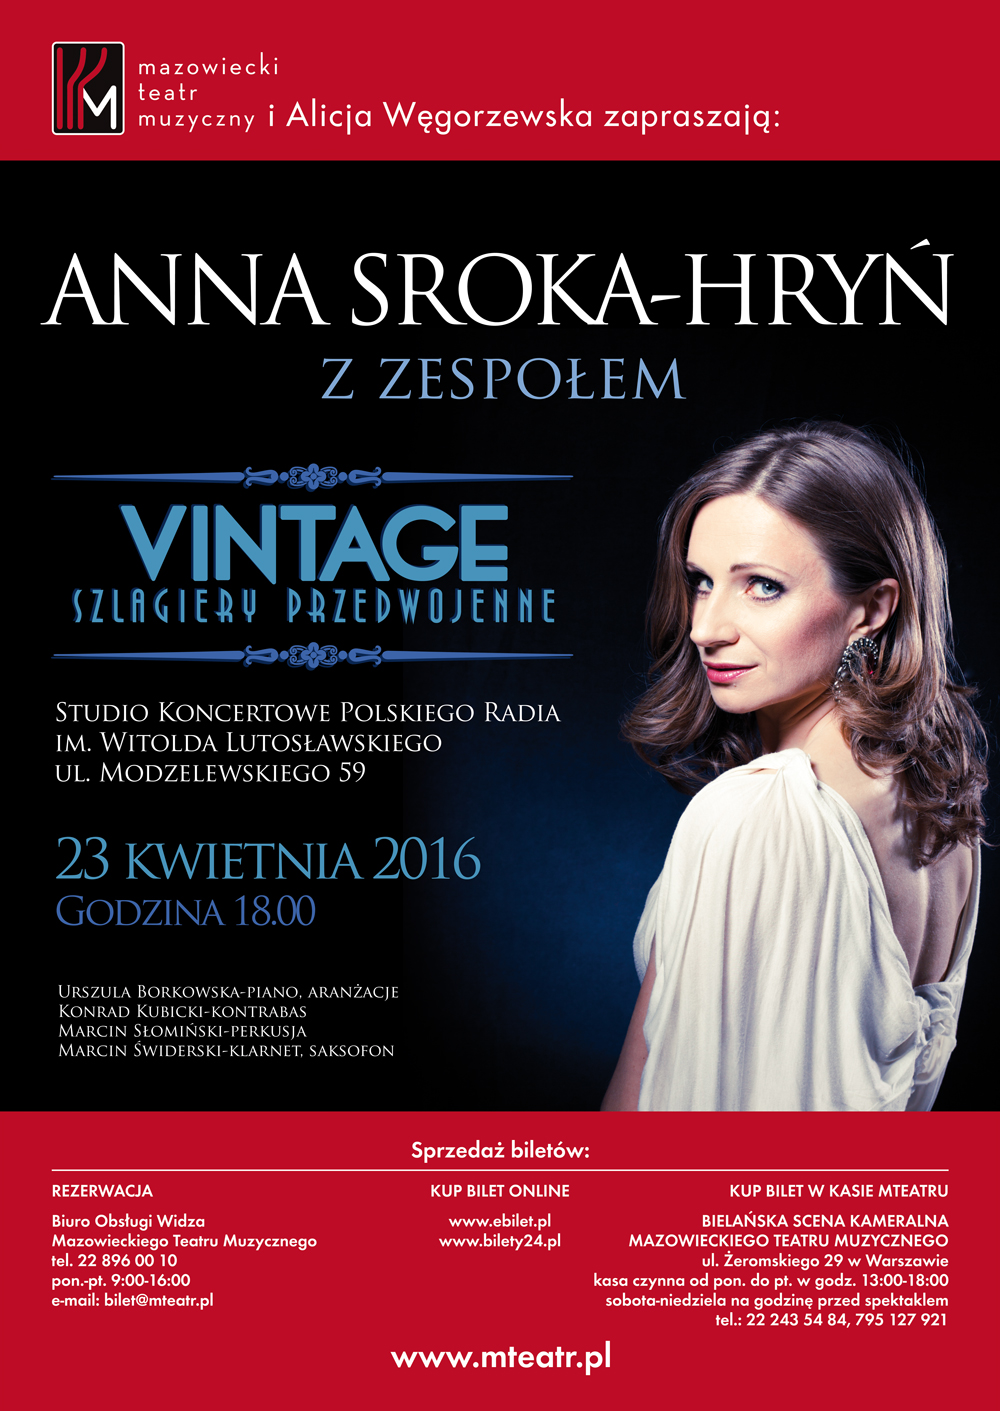 ANNA SROKA-HRYŃ z zespołem – Piosenki vintage – Przedwojenne szlagiery